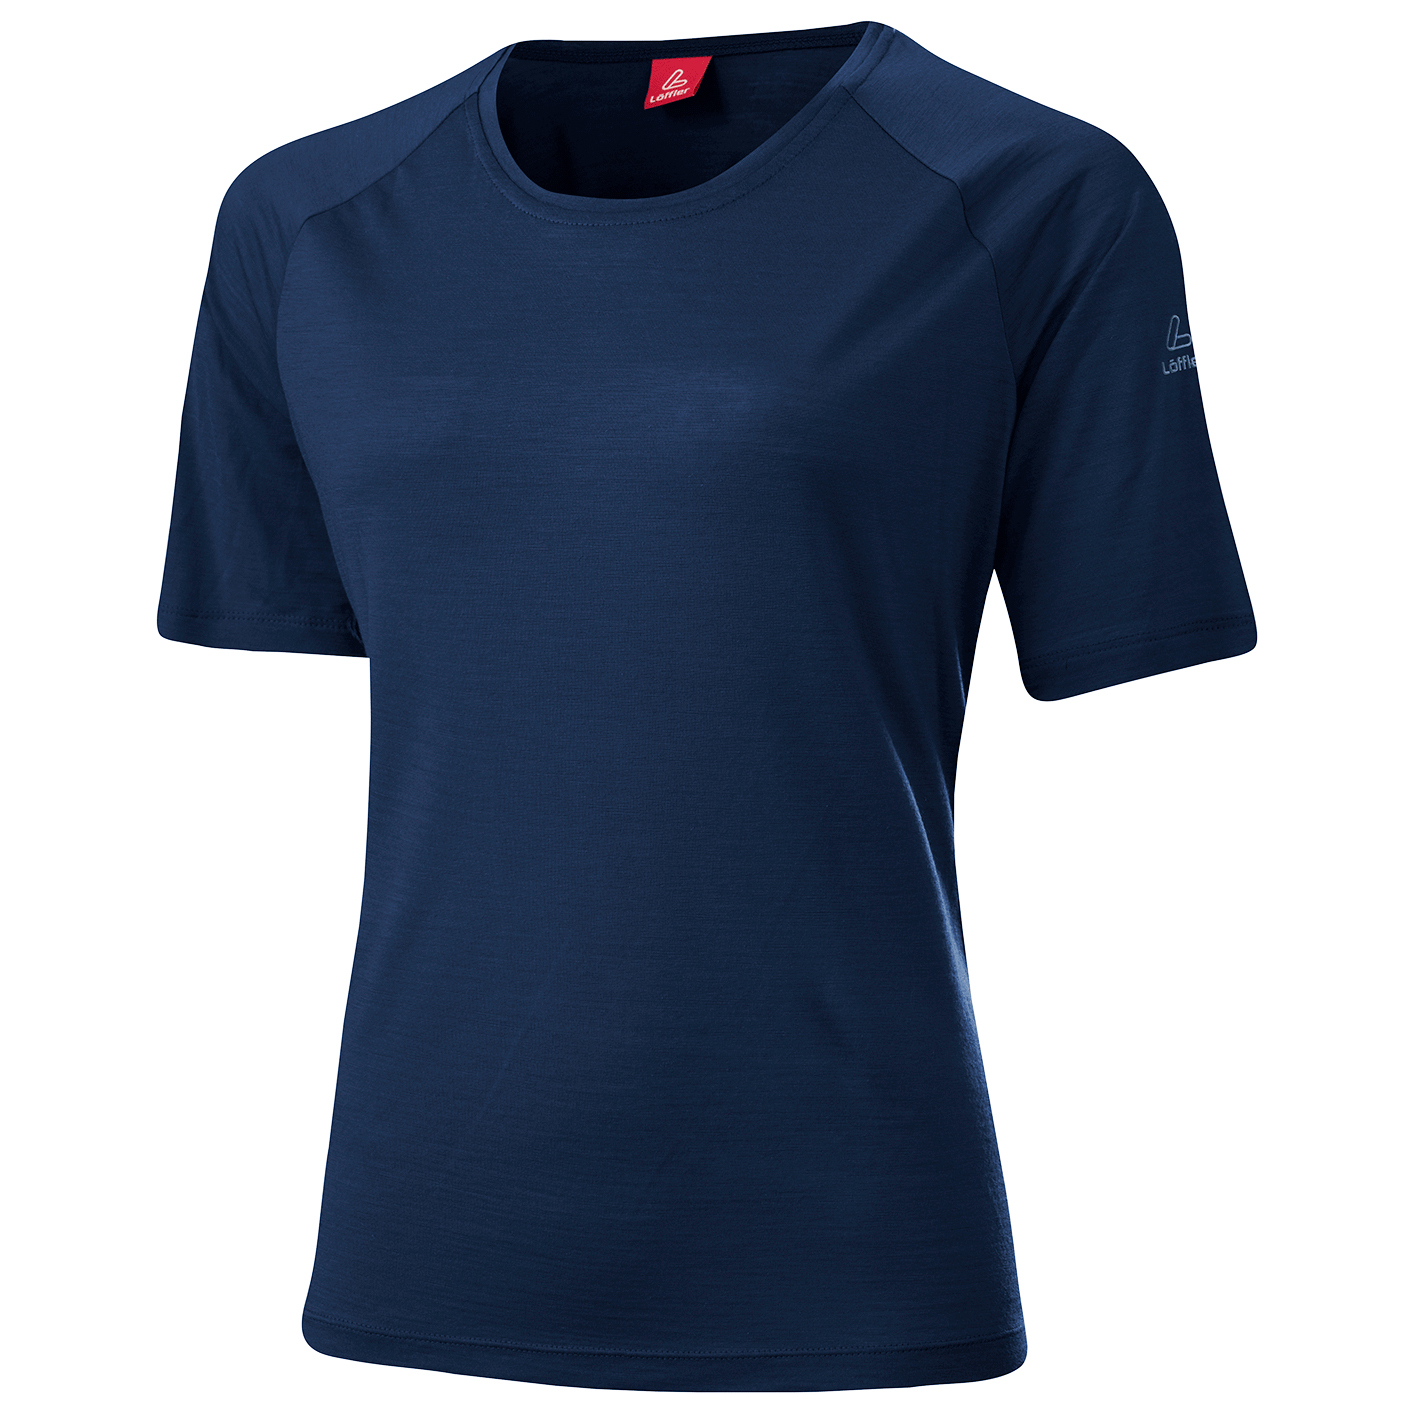 Рубашка из мериноса Löffler Women's Shirt Merino Tencel Comfort Fit, темно синий